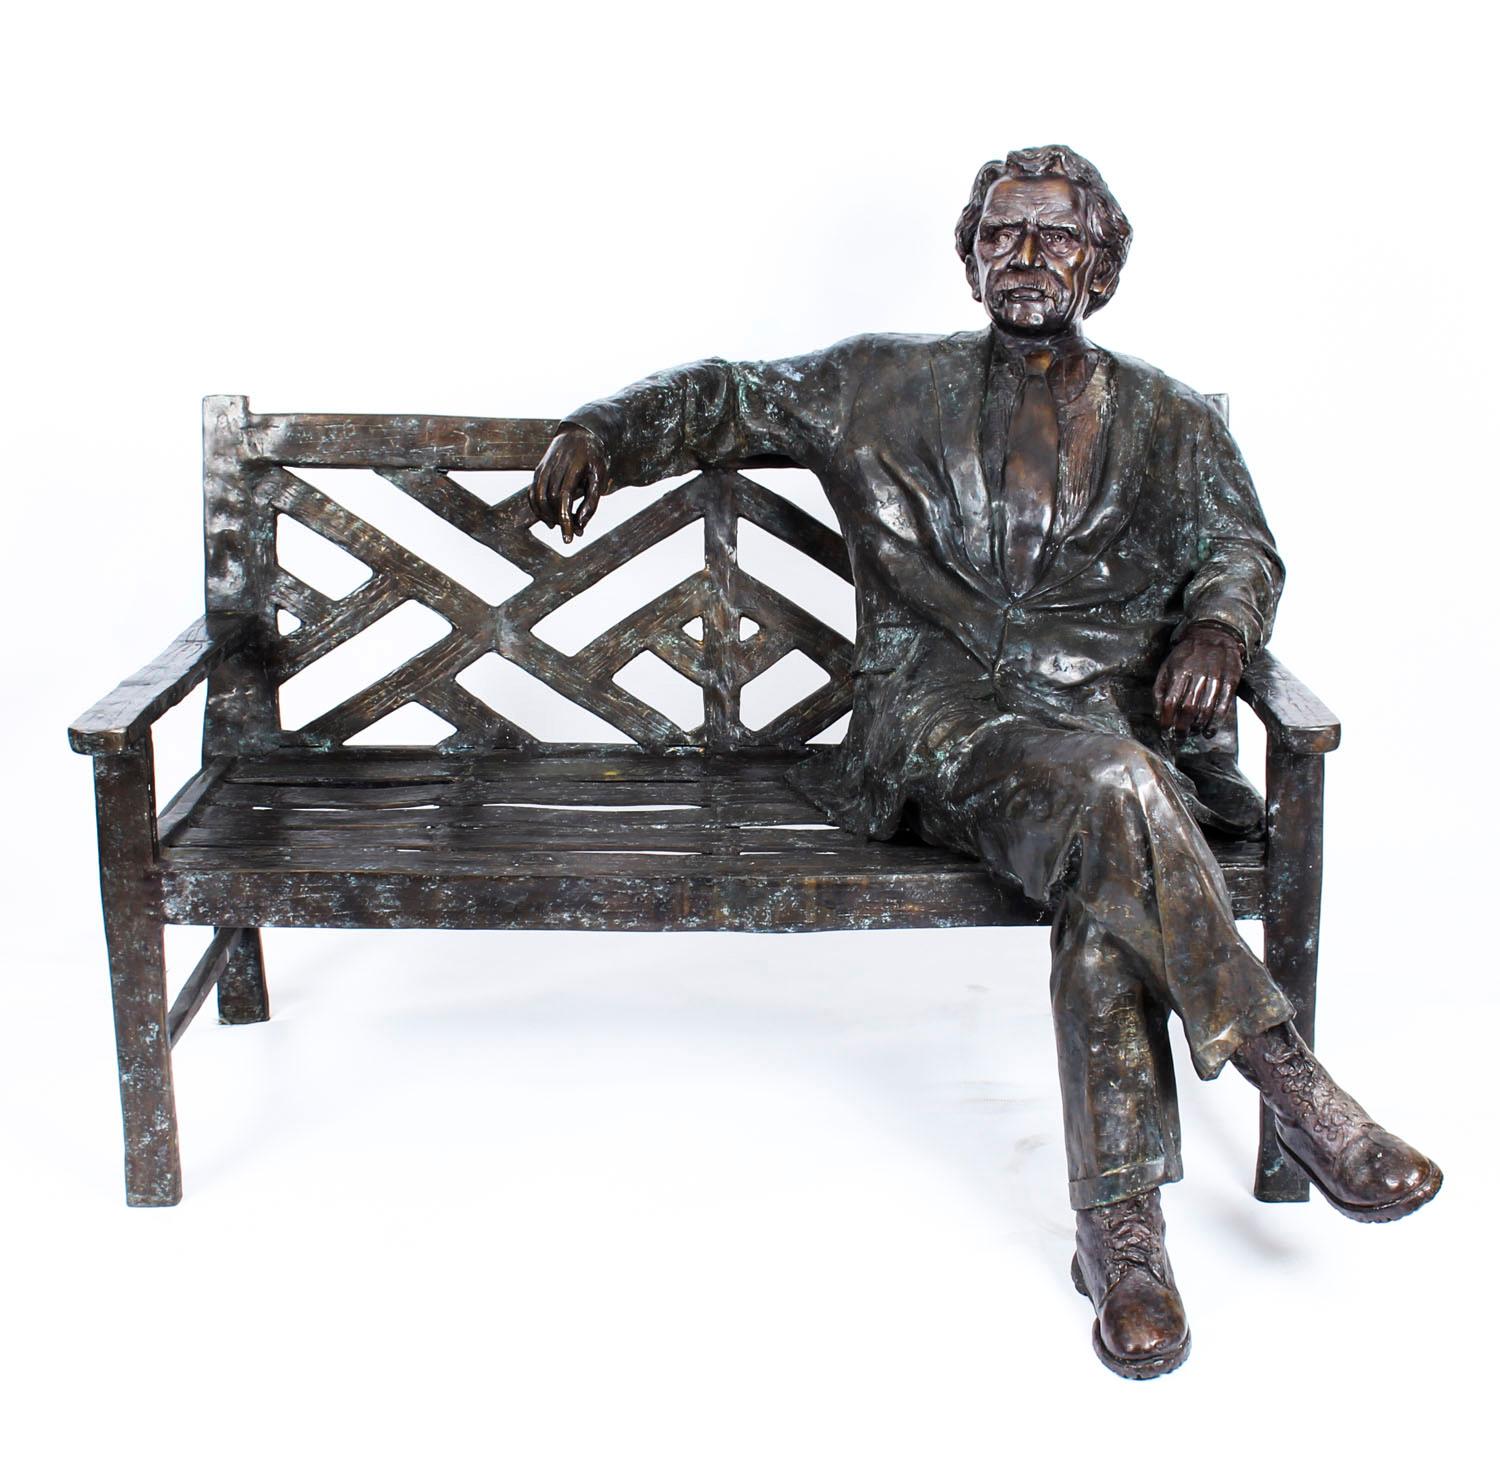 Es handelt sich um eine spektakuläre, überlebensgroße Bronzestatue des in Deutschland geborenen theoretischen Physikers Albert Einstein, der entspannt und ungezwungen auf einer Bank im Freien sitzt und aus dem späten 20.

Diese bemerkenswerte Statue